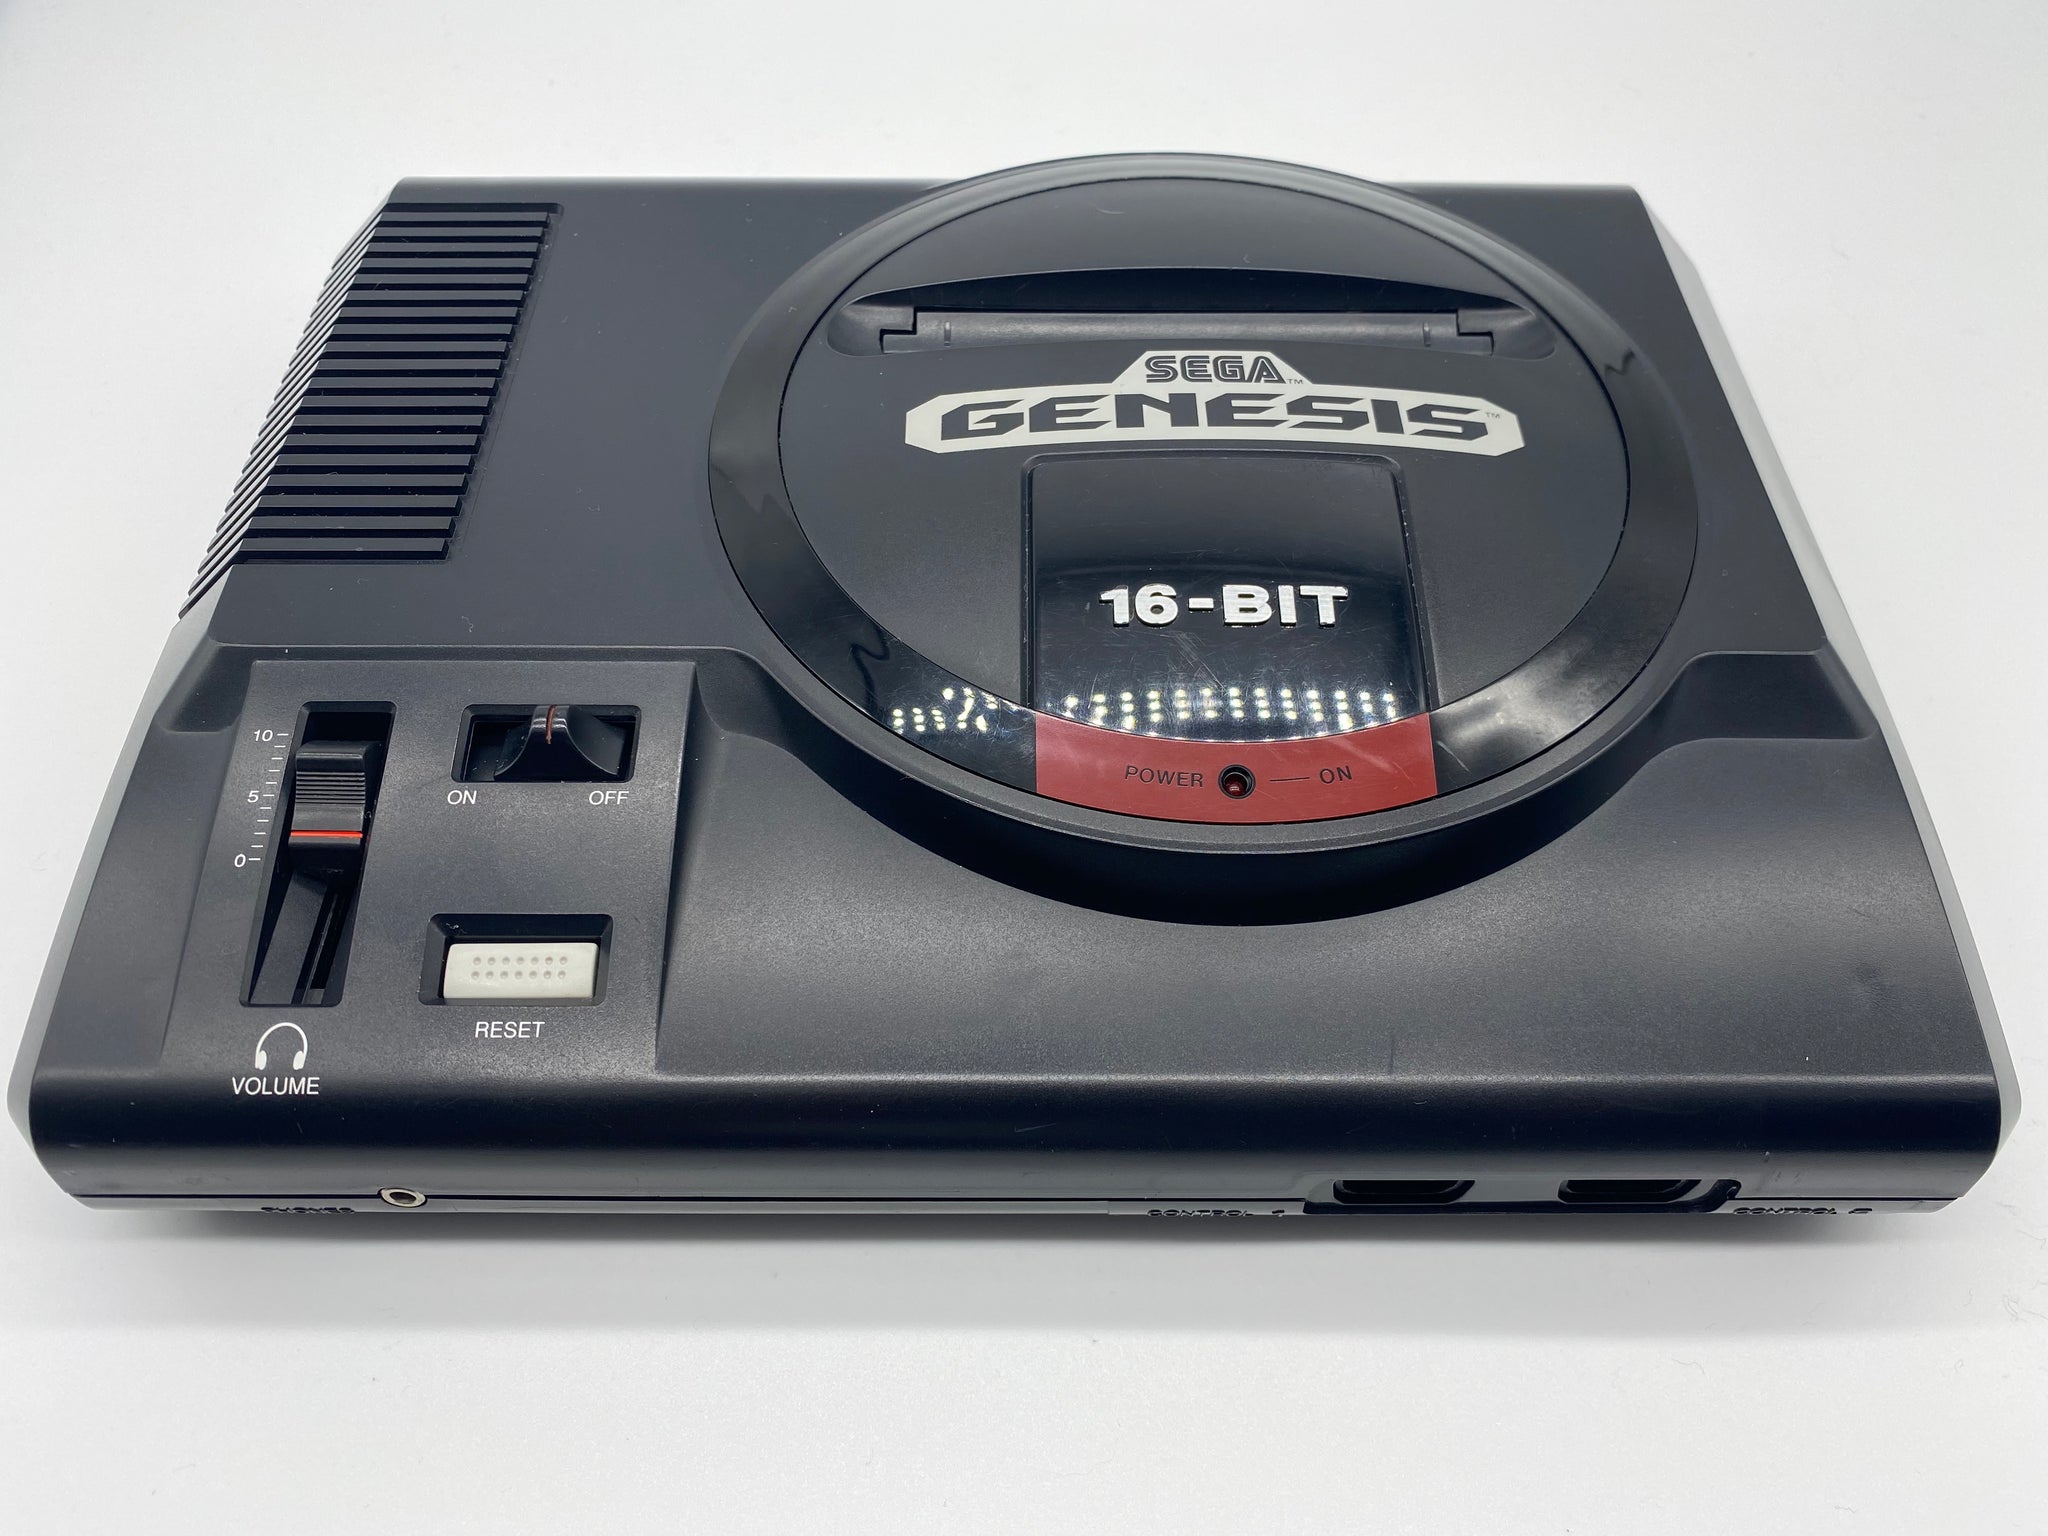 Sega Genesis Console